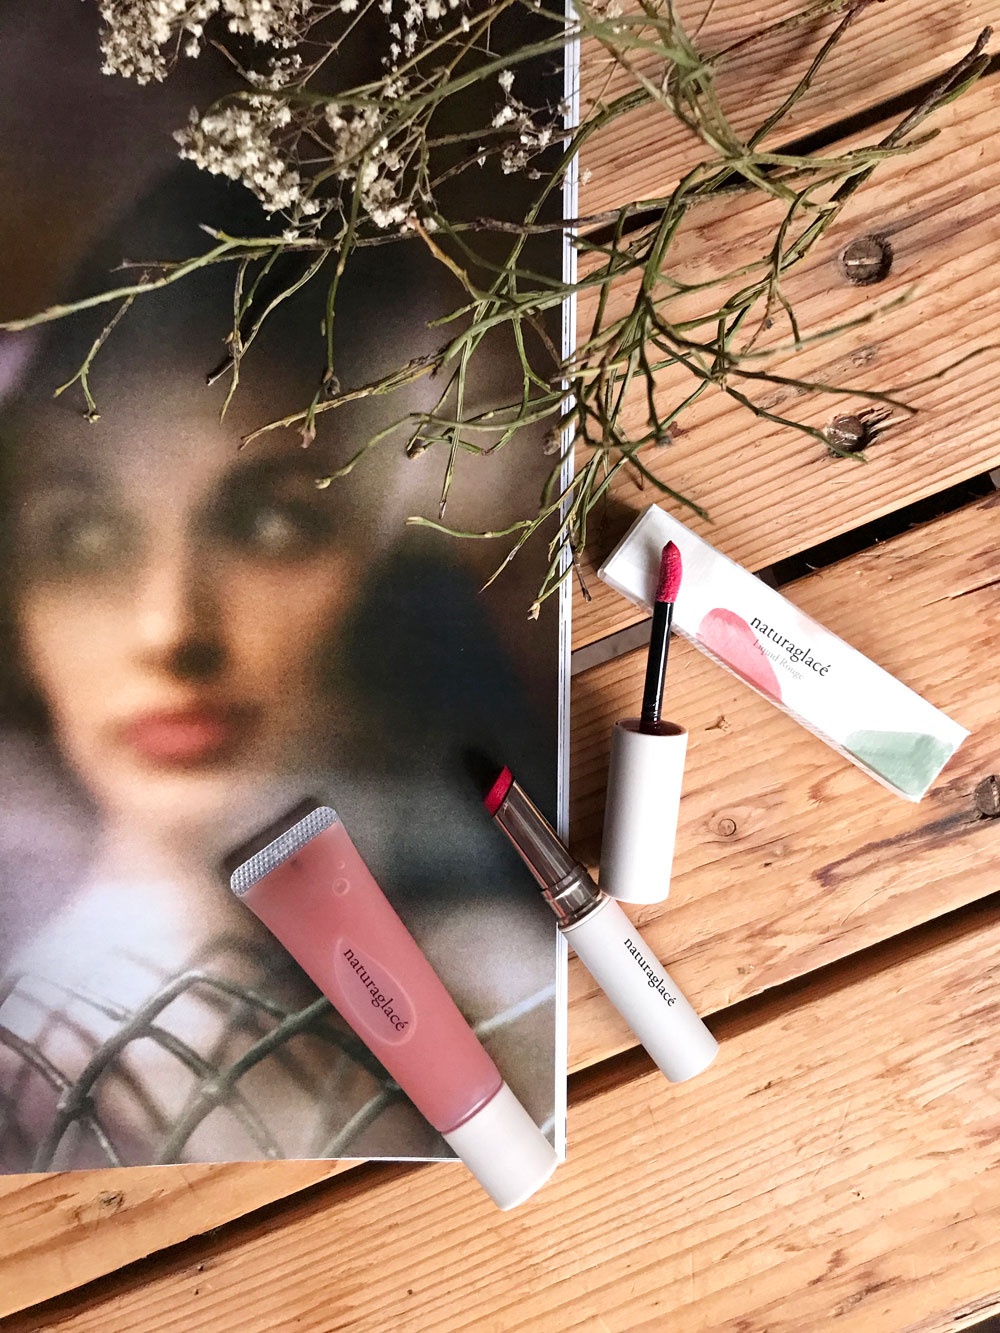 sonrisa feiert den Lipstickday 2019 mit einer Beauty-Verlosung, bei der es zwei Lippenstift-Sets von naturaglace zu gewinnen gibt.